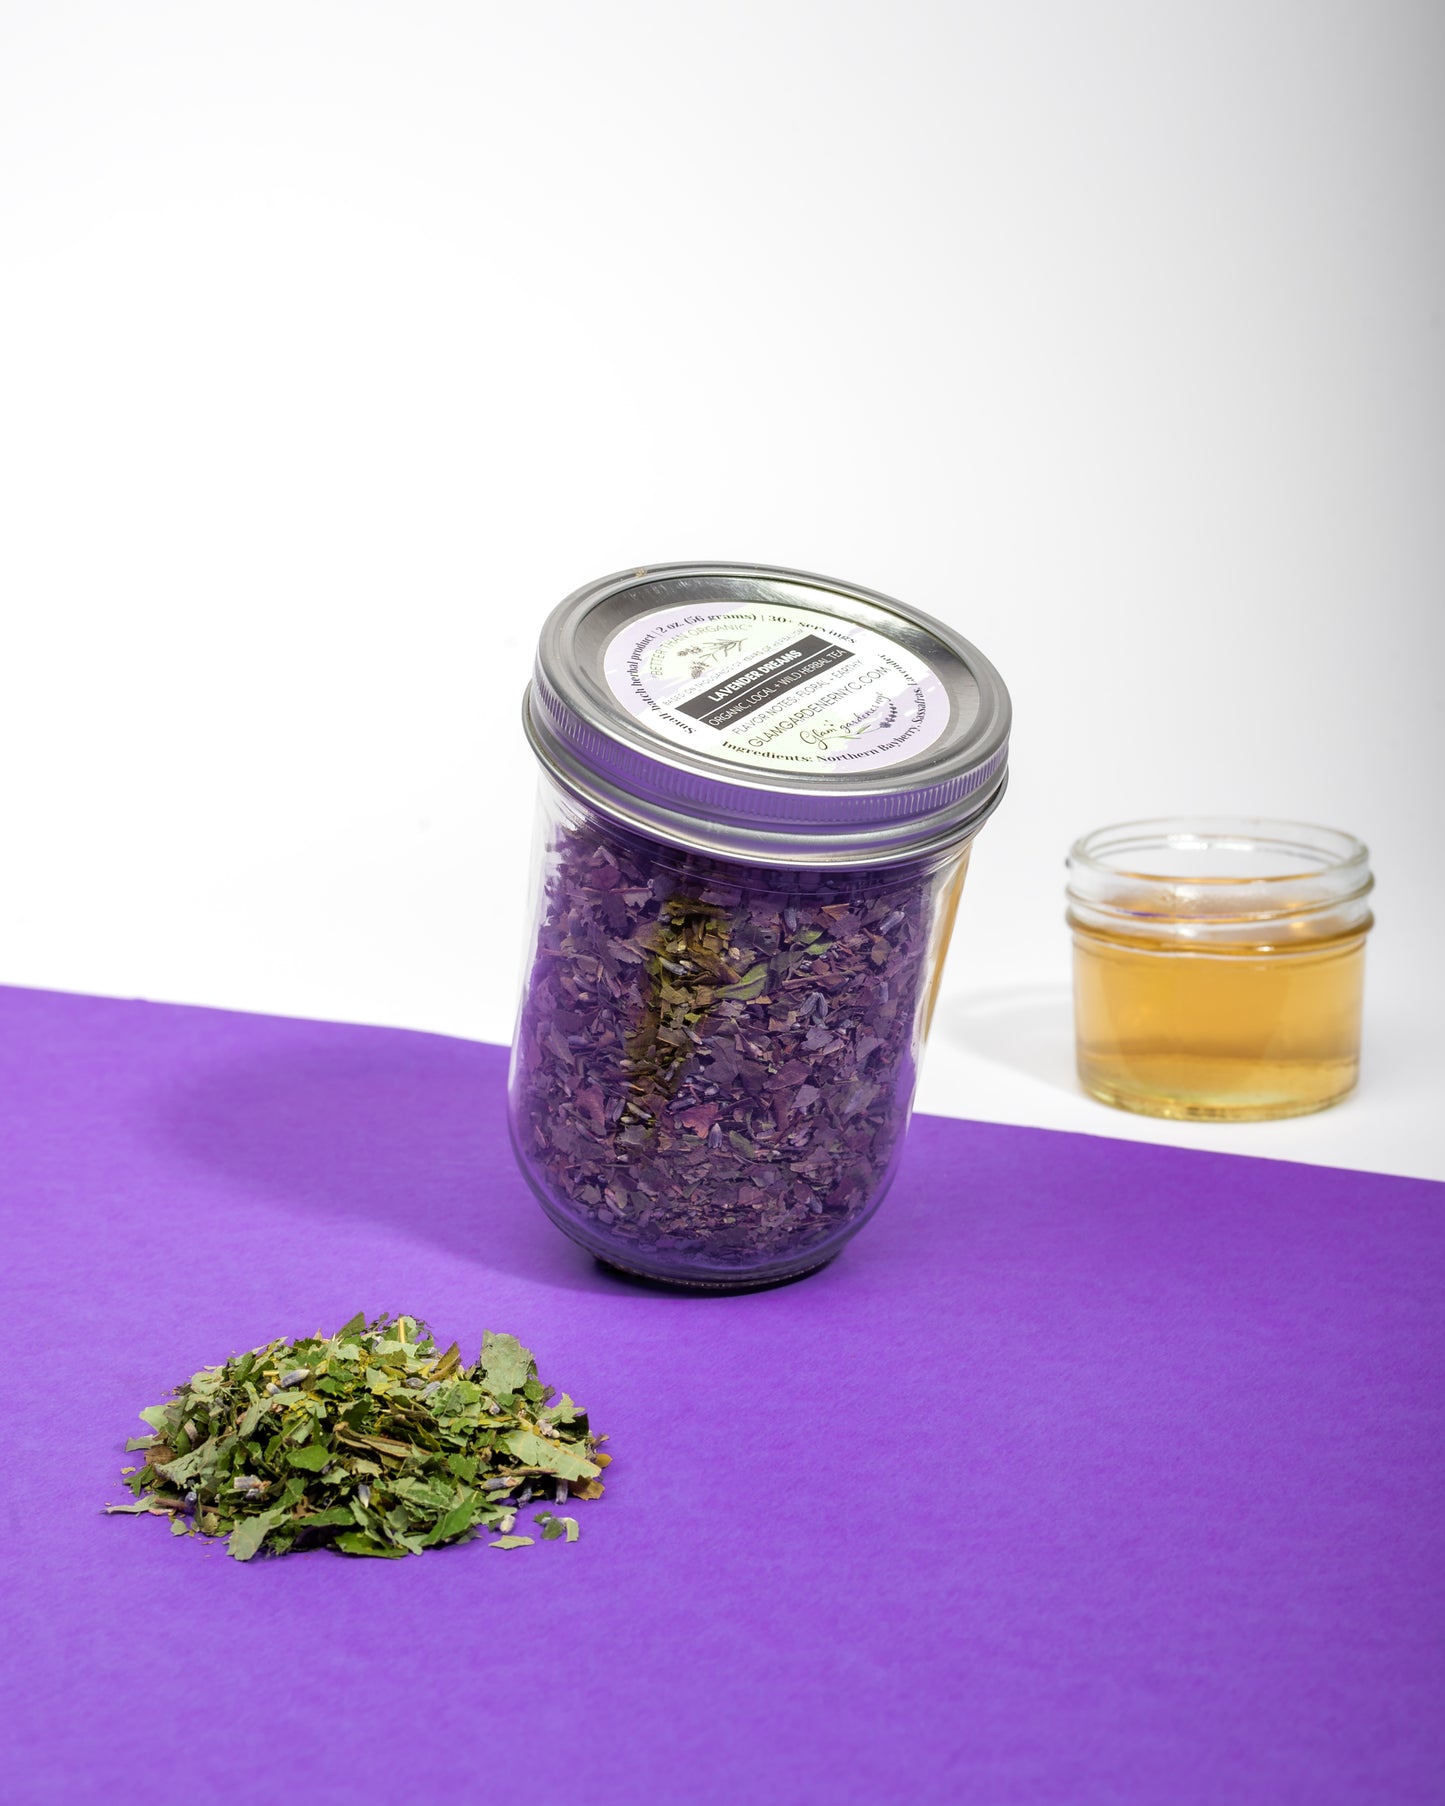 Lavender dreams loose leaf herbal tea (designed to soothe)